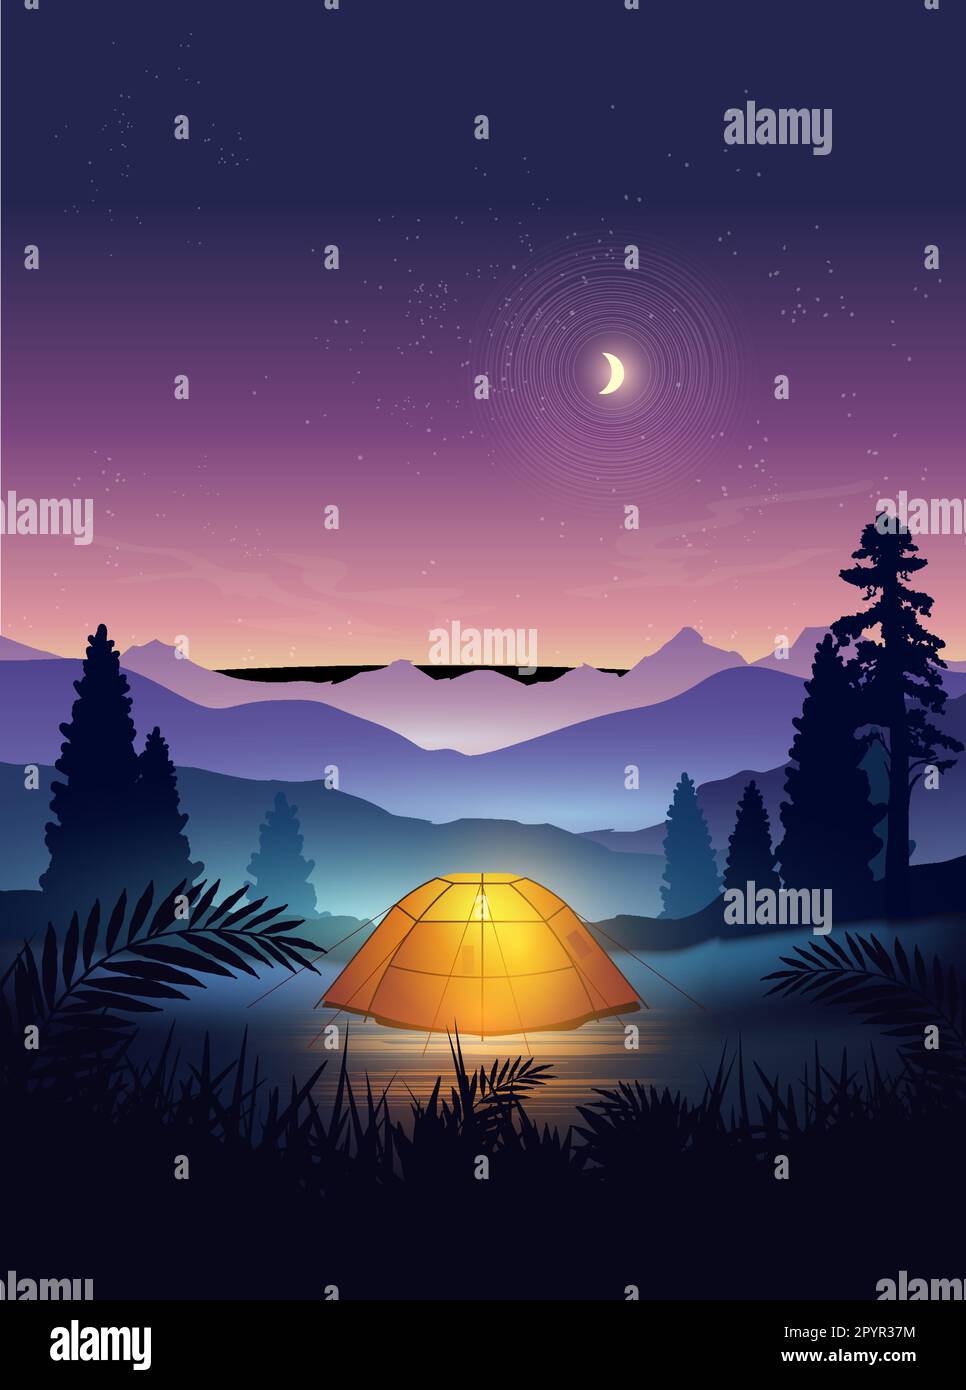 Ein Campingzelt in einem wunderschönen Reiseort mit Bergen und Bäumen, in der Dämmerung, mit Mond und Sterne am Nachthimmel. Vektor i Stock Vektor